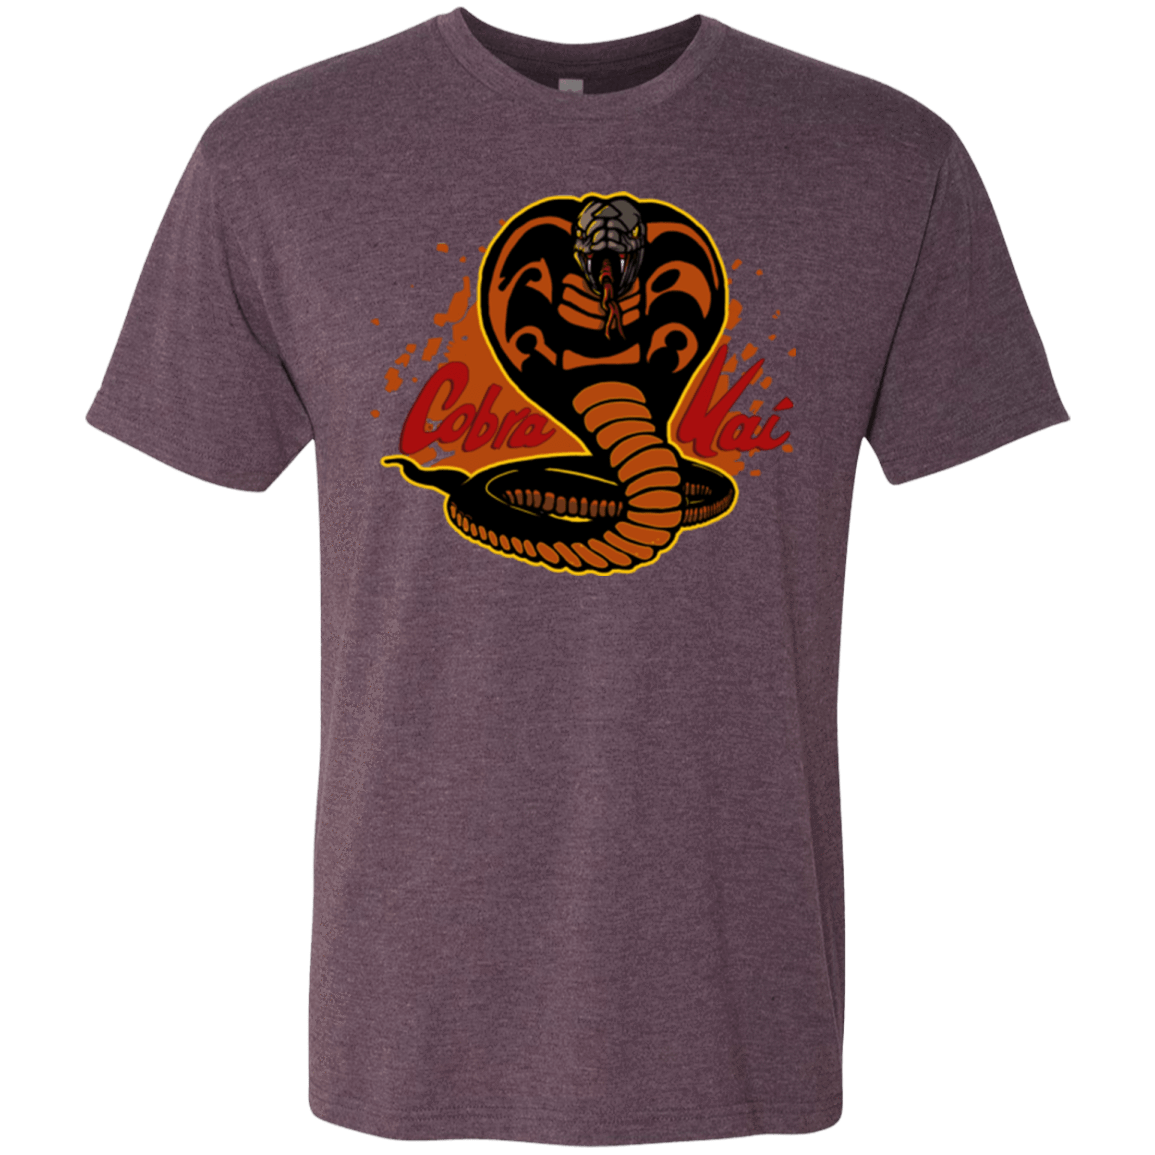 T-Shirts Vintage Purple / S Familiar Reptile Men's Triblend T-Shirt